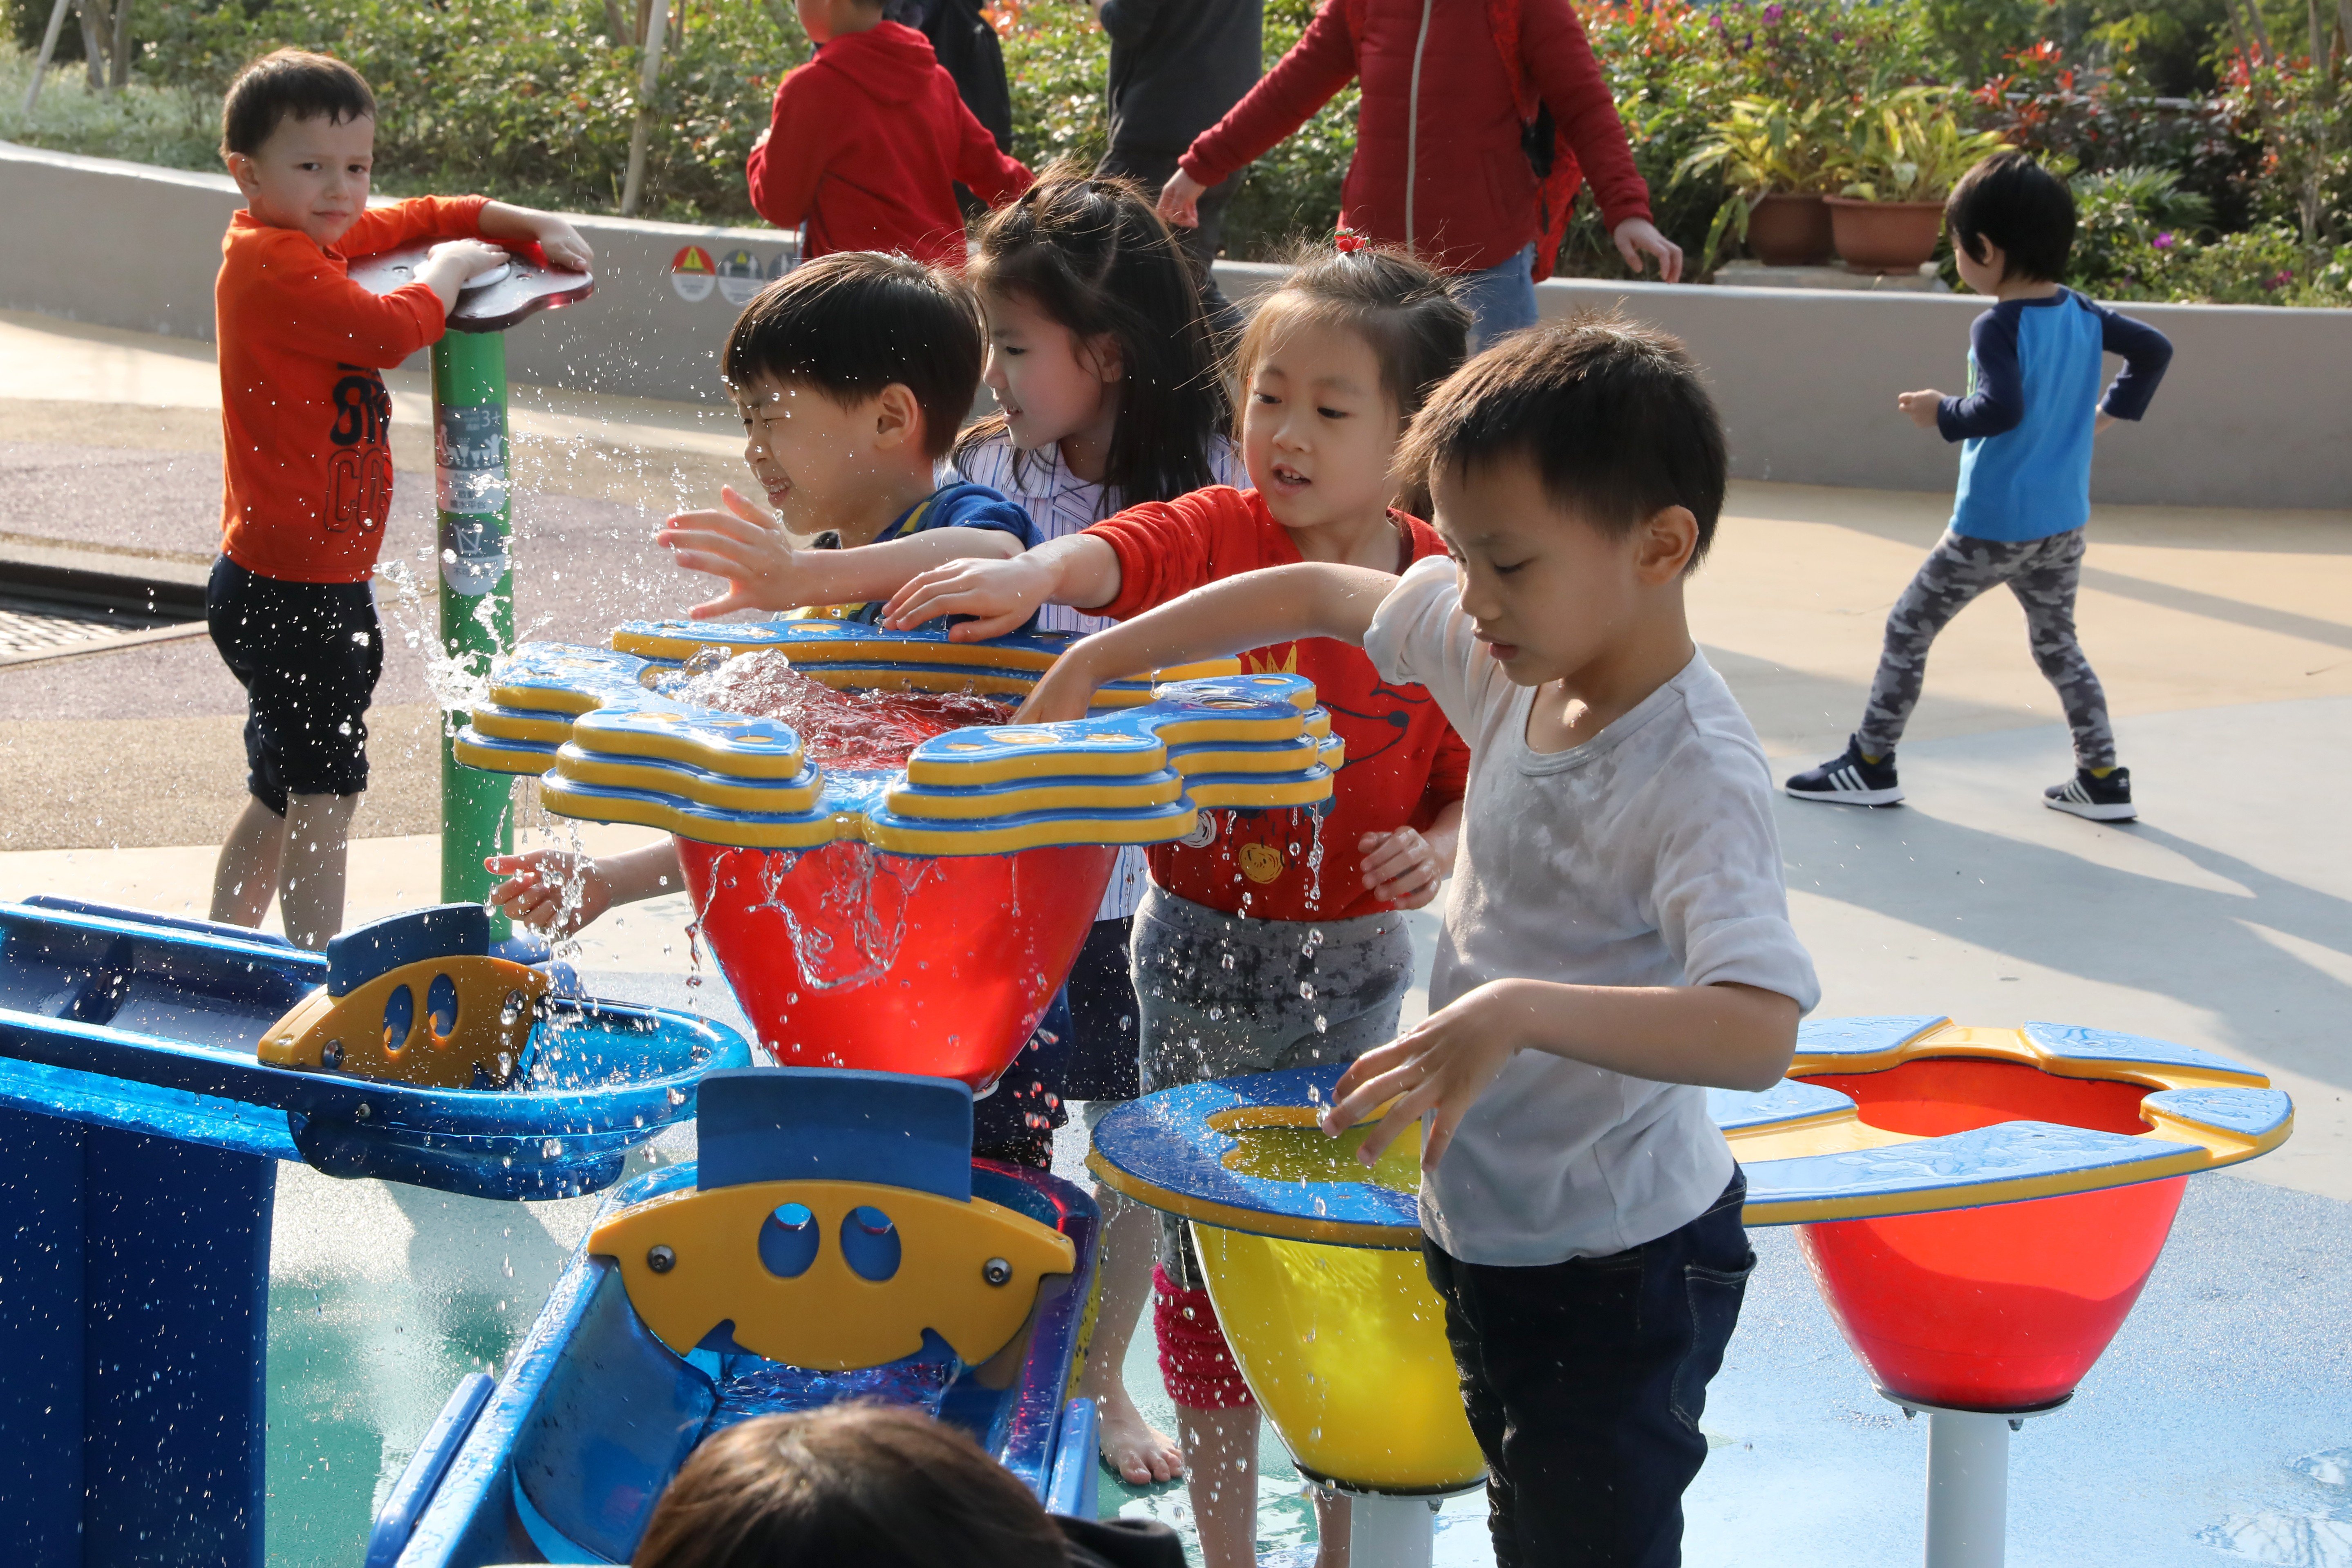 Children at play in Tuen Mun. Photo: K.Y. Cheng